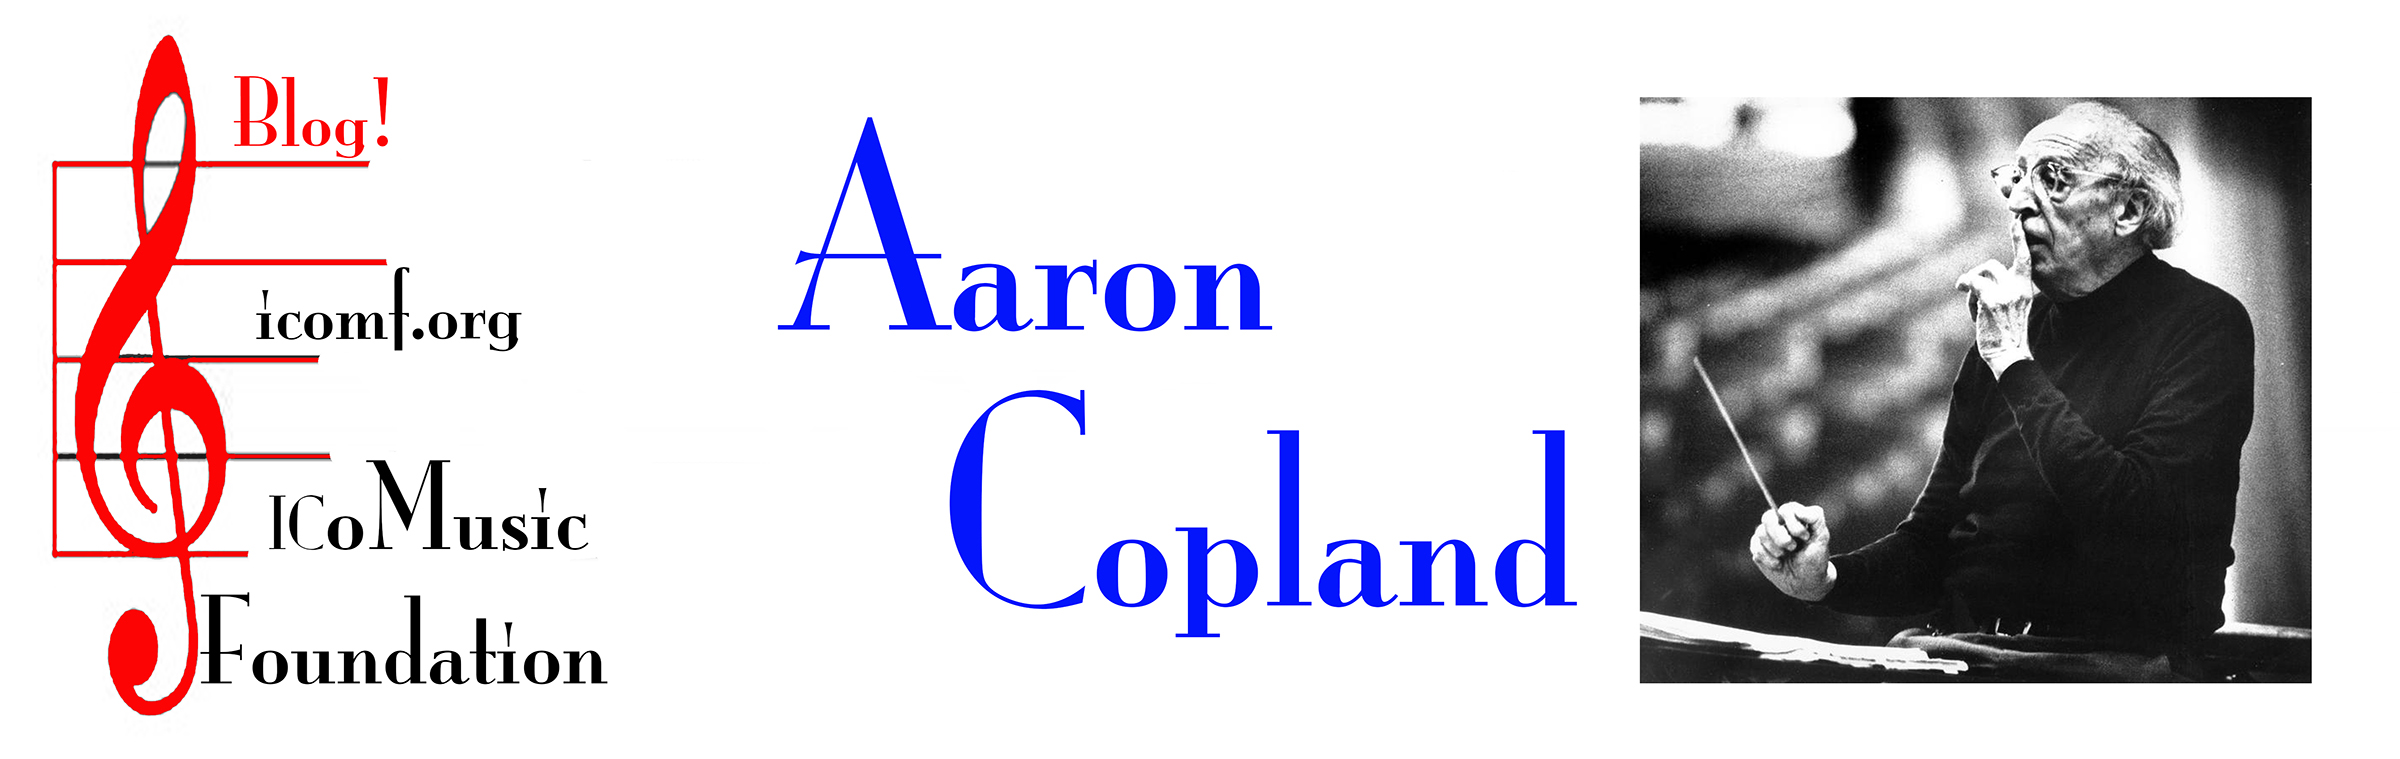 Aaron Copland Blog Banner